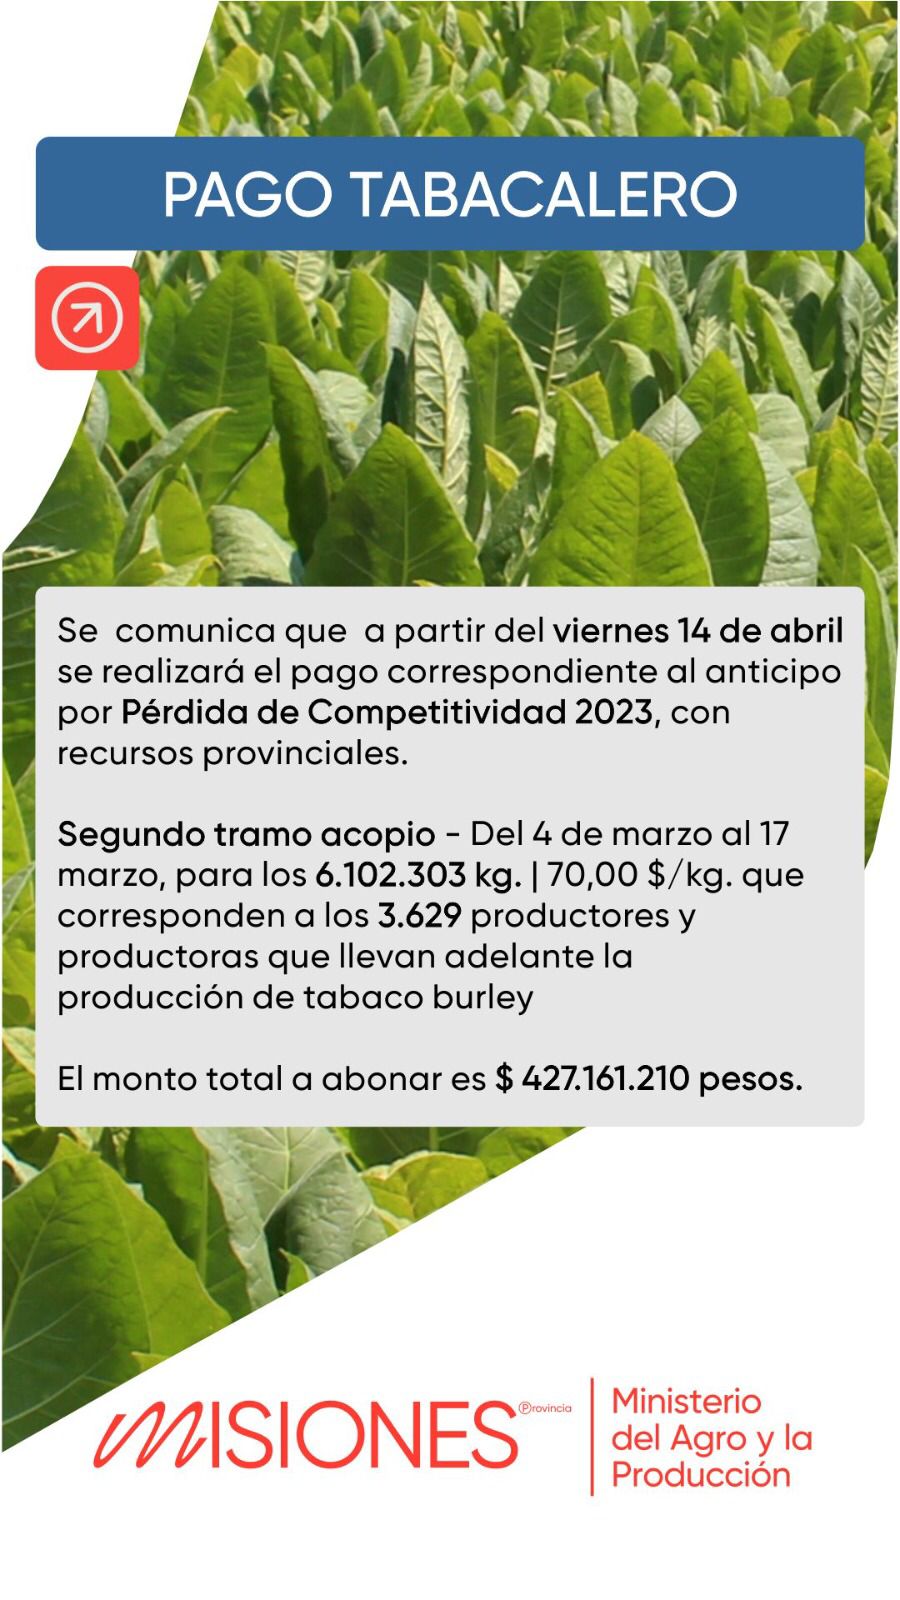 El viernes pagarán más de 400 millones de pesos a productores tabacaleros misioneros